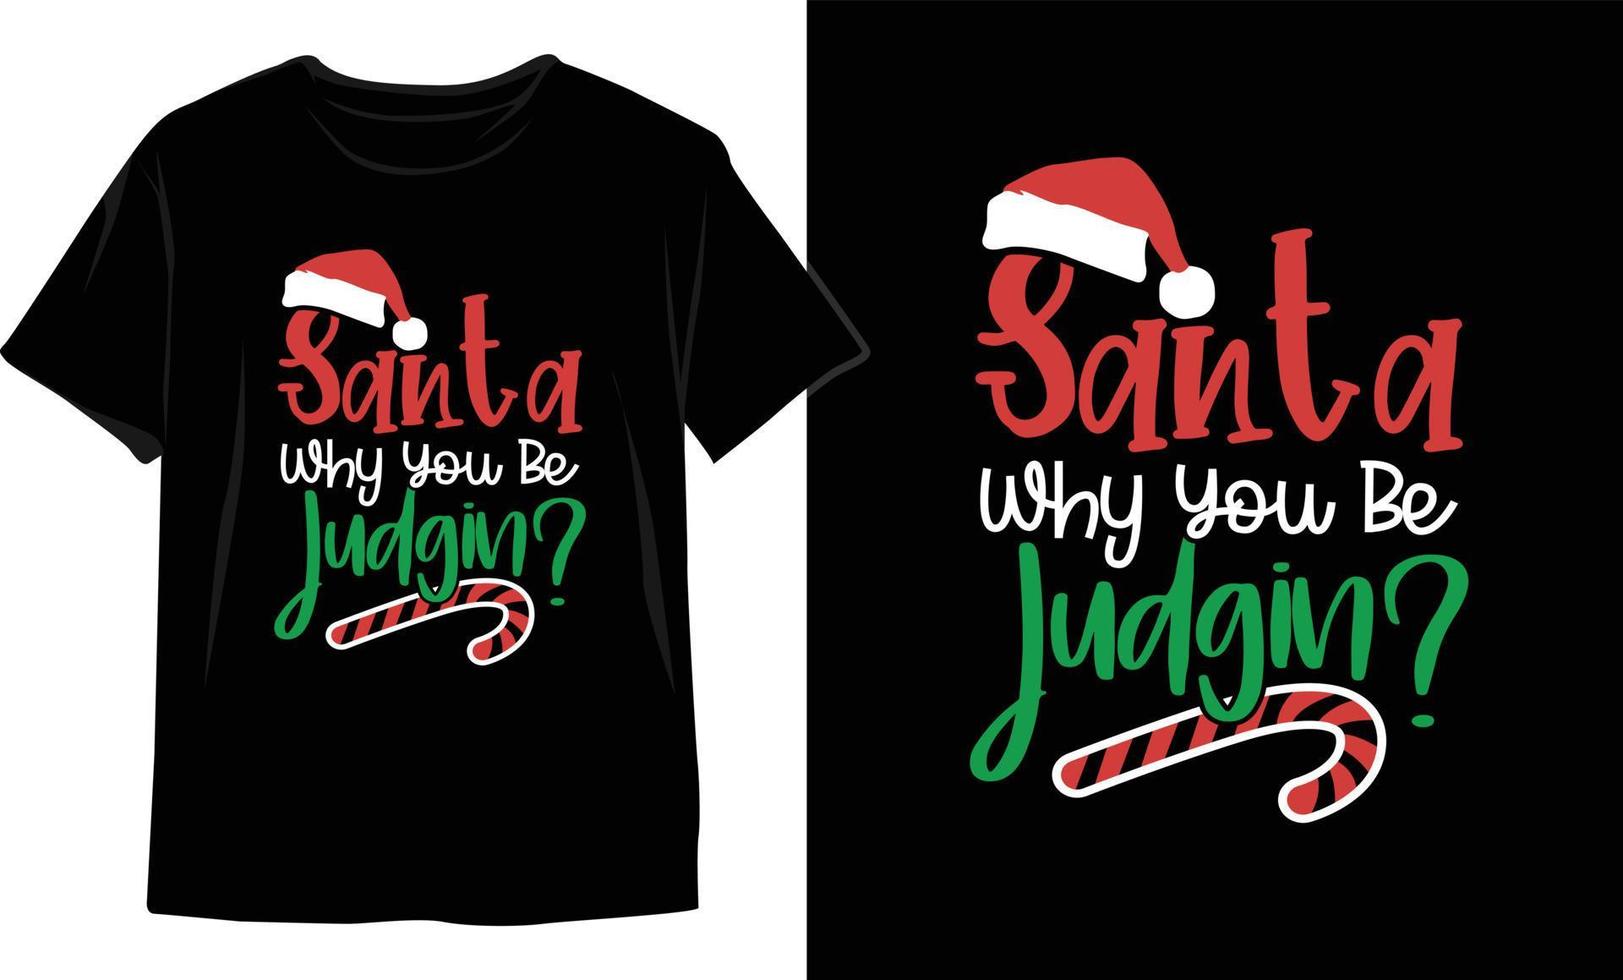 Kerstmis t overhemd ontwerp. Kerstmis vector grafiek. t overhemd ontwerp